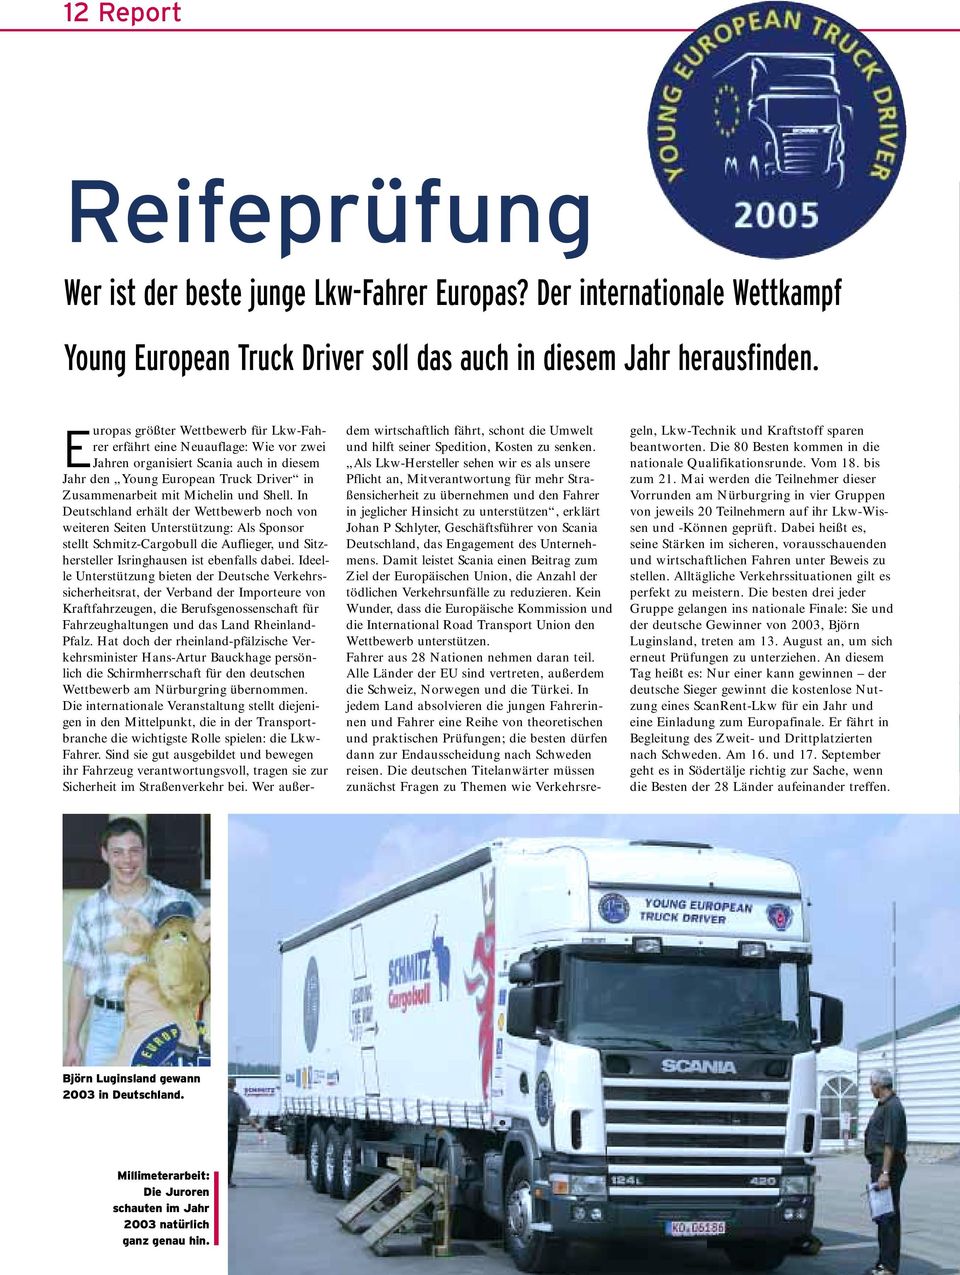 In Deutschland erhält der Wettbewerb noch von weiteren Seiten Unterstützung: Als Sponsor stellt Schmitz-Cargobull die Auflieger, und Sitzhersteller Isringhausen ist ebenfalls dabei.